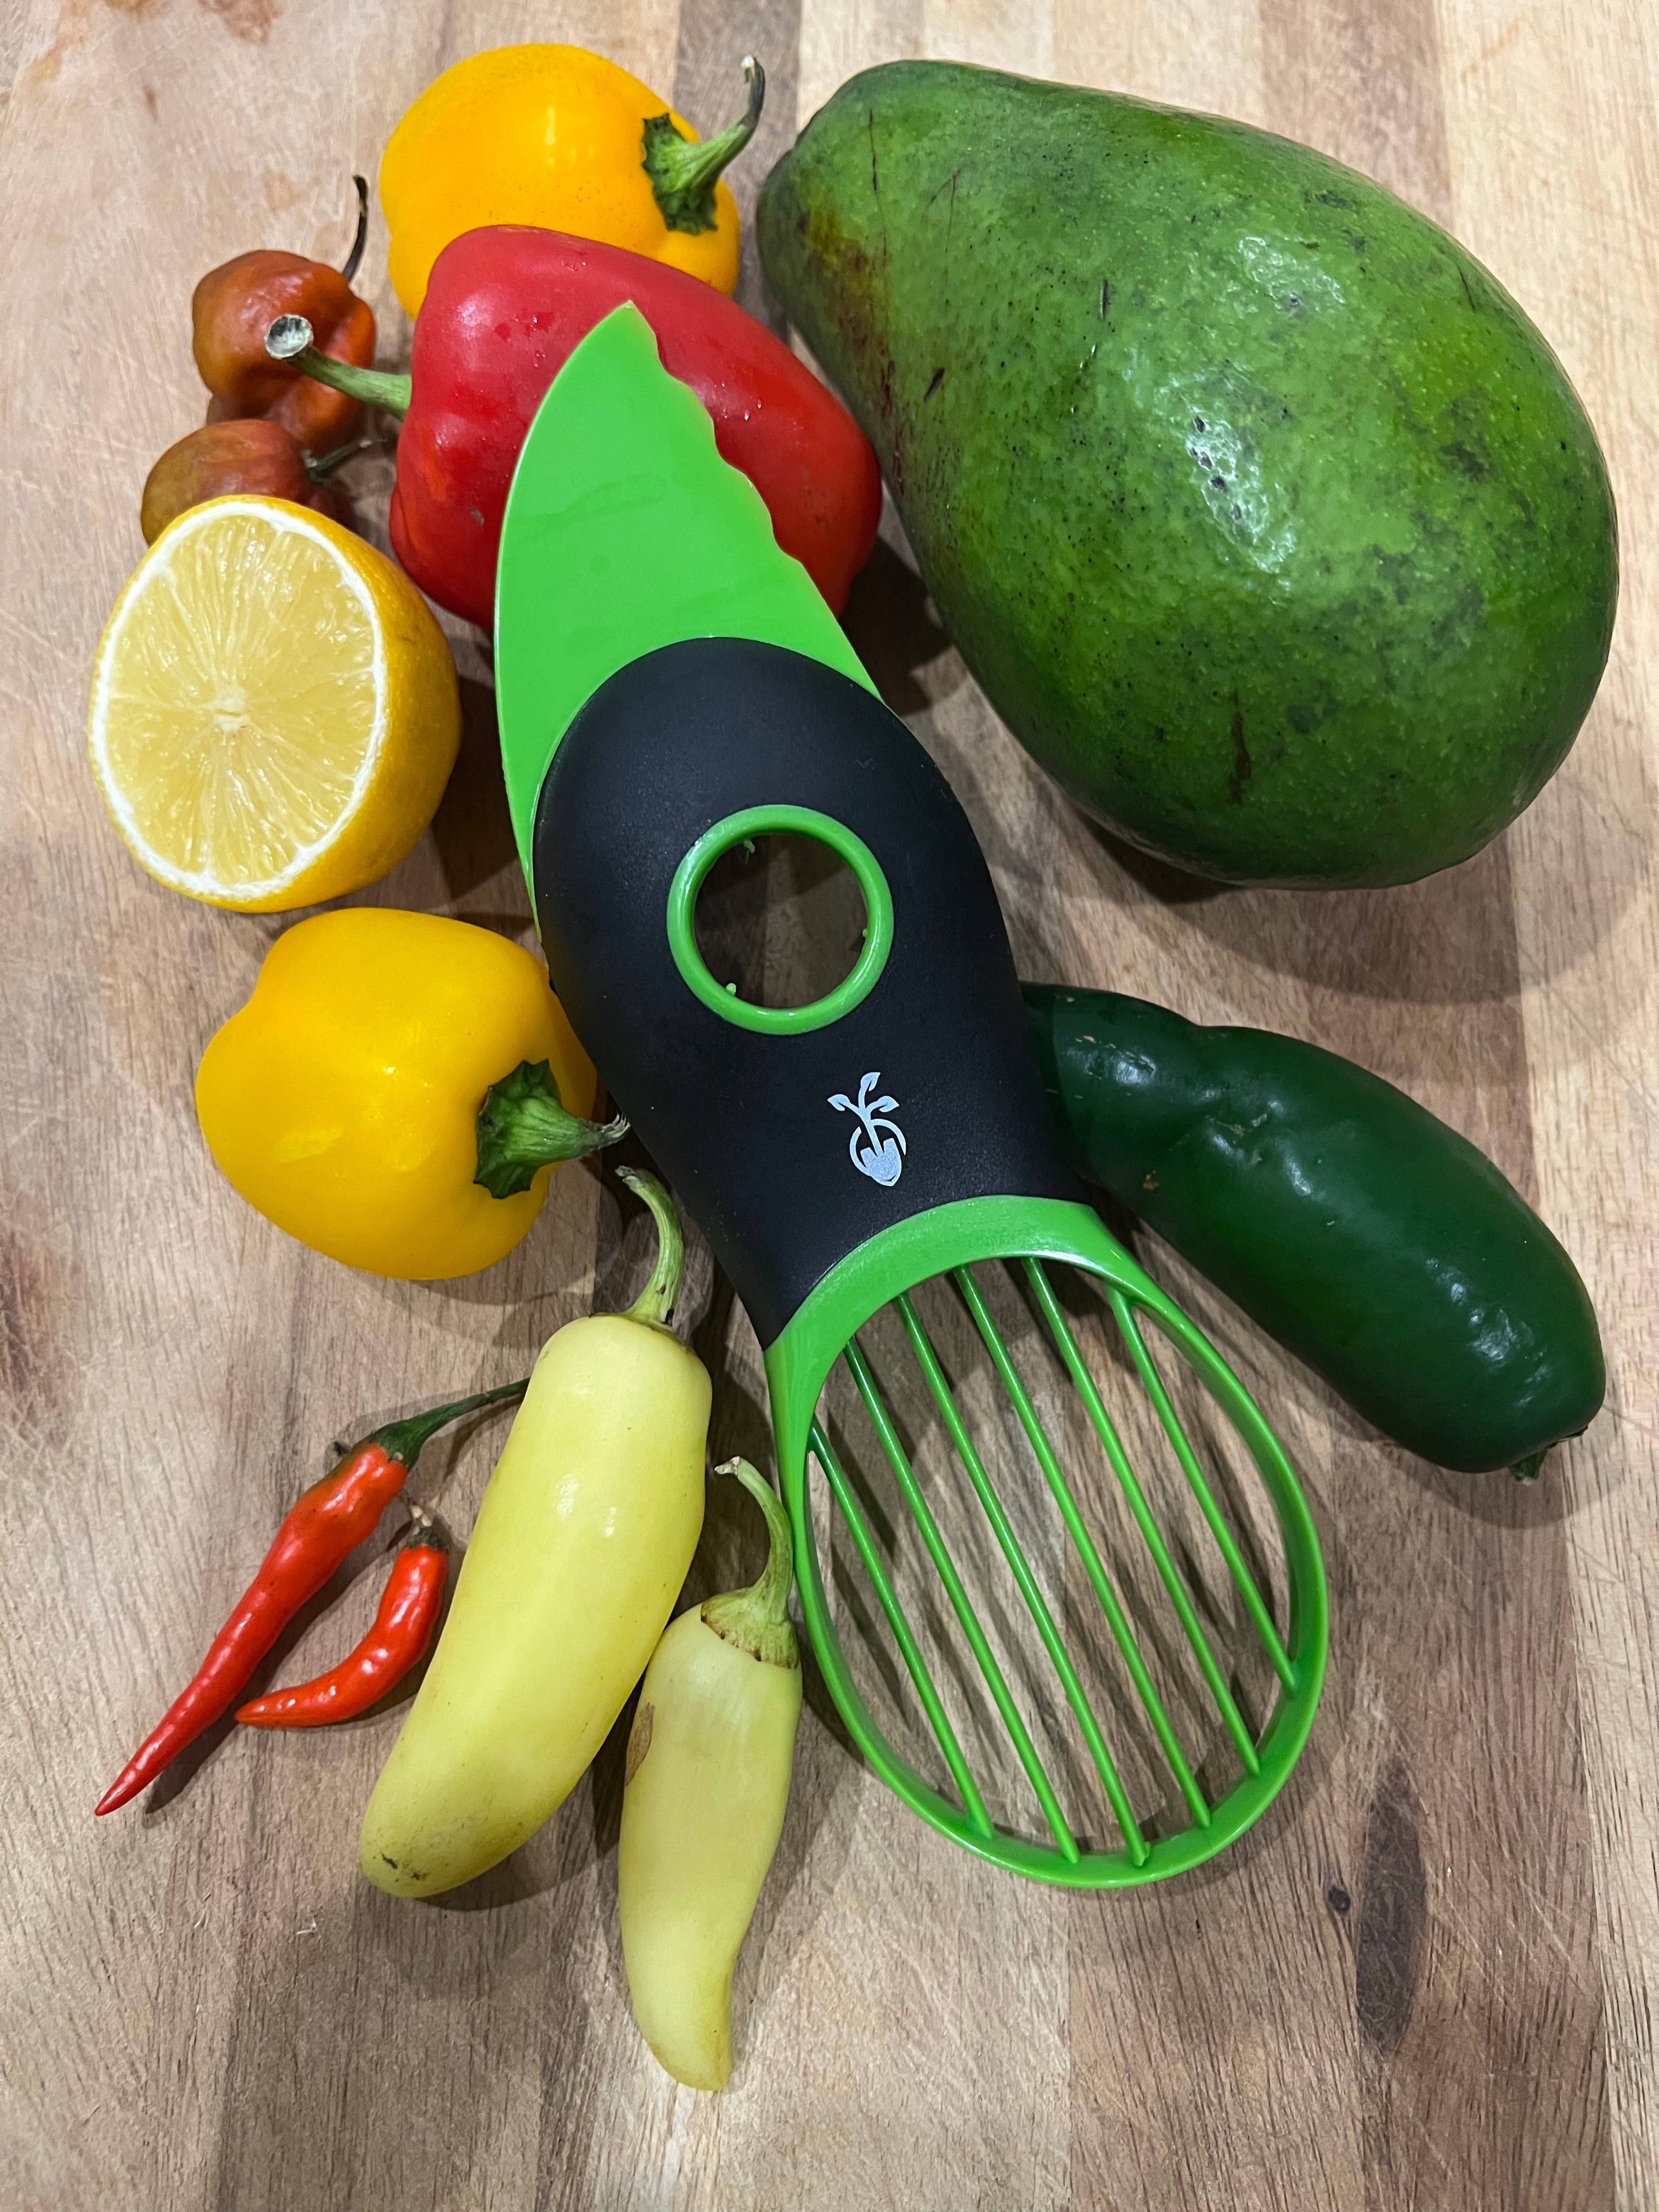 OXO Good Grips 3-in-1 Avocado Slicer - Utensils & Knives